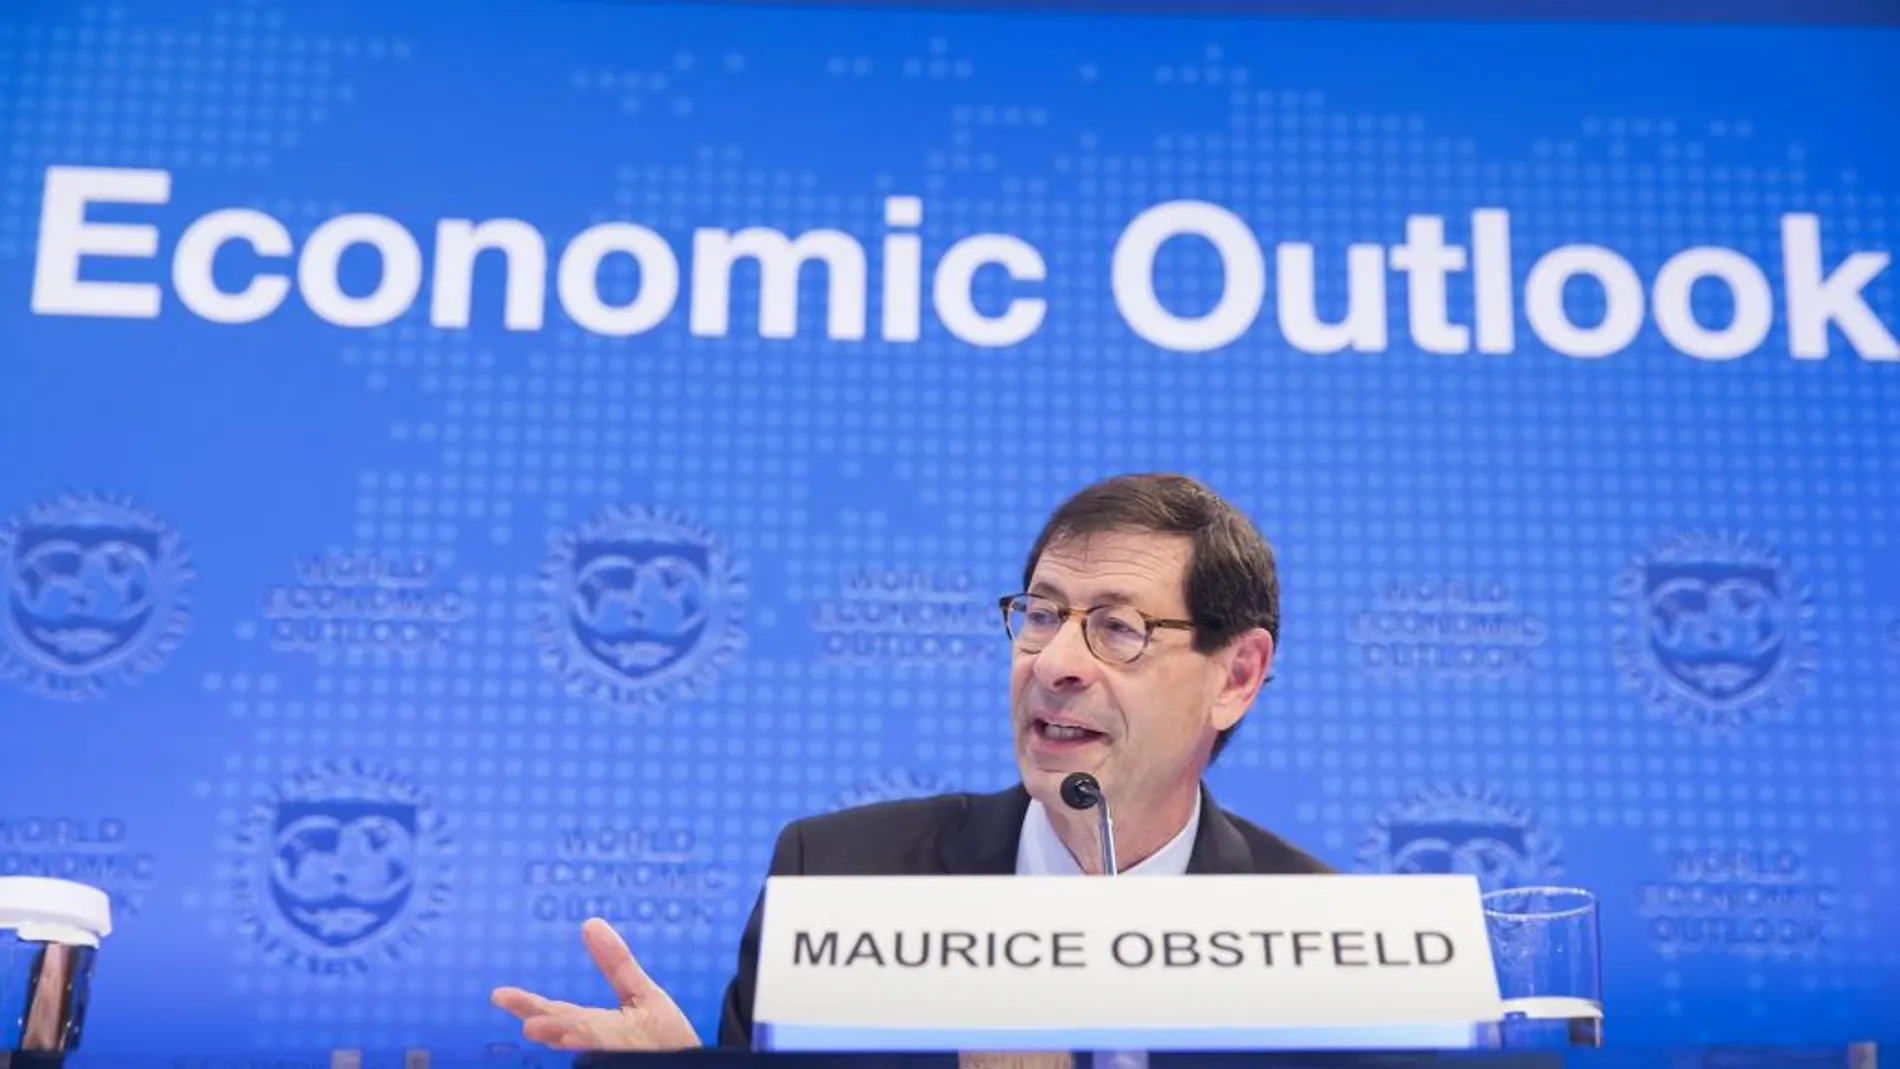 El economista jefe del Fondo Monetario Internacional (FMI), Maurice Obstfeld, durante una rueda de prensa para presentar el informe "Perspectivas Económicas Globales"en la sede del FMI